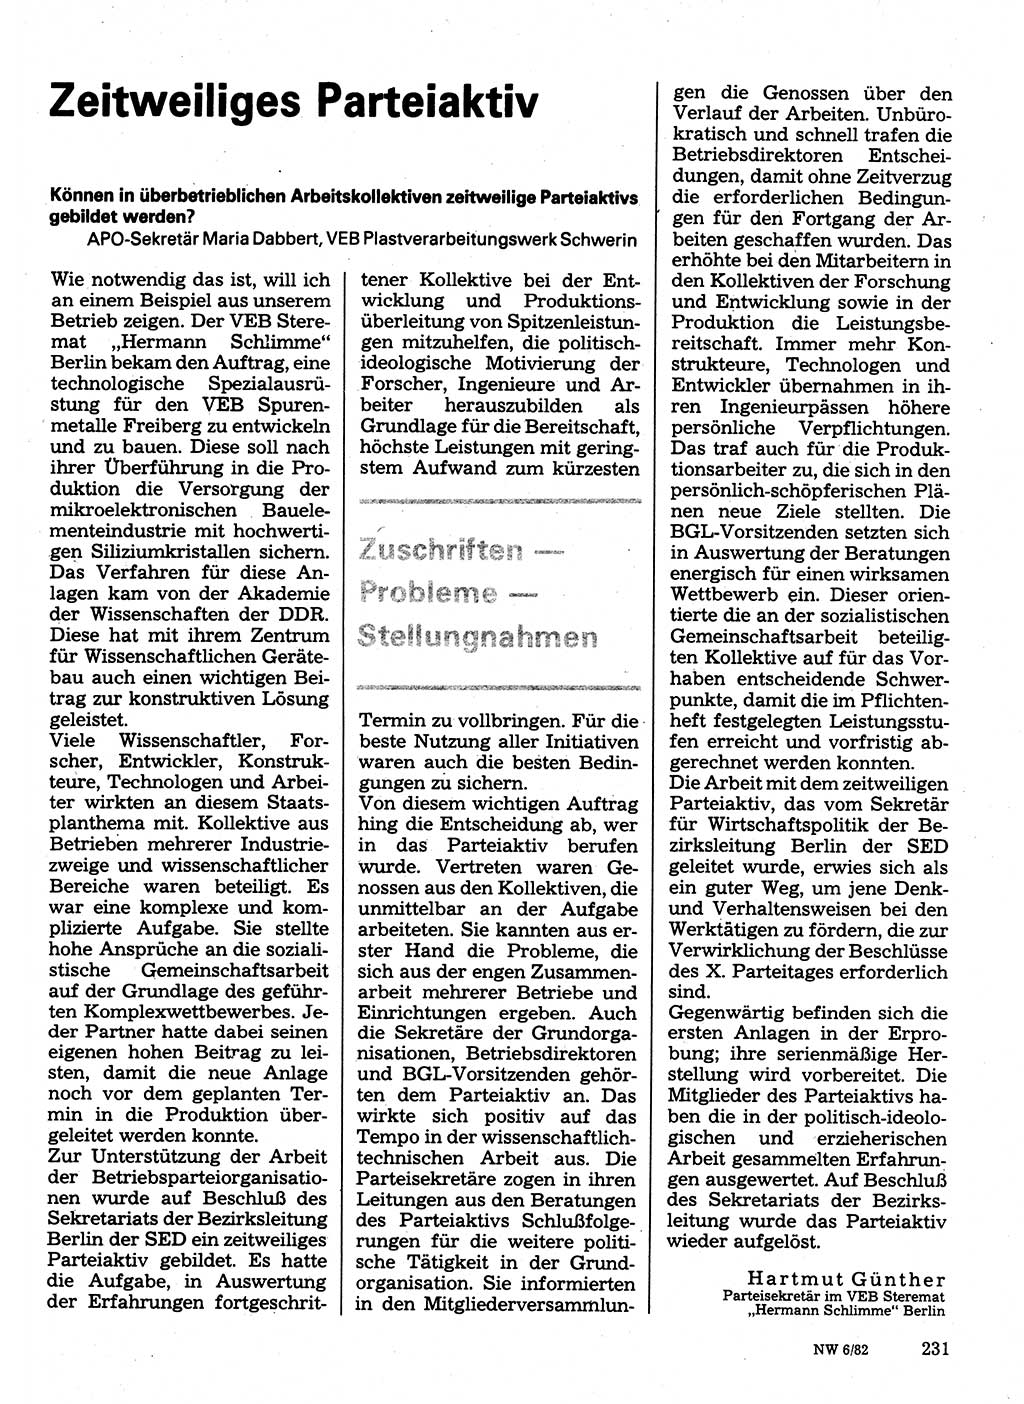 Neuer Weg (NW), Organ des Zentralkomitees (ZK) der SED (Sozialistische Einheitspartei Deutschlands) für Fragen des Parteilebens, 37. Jahrgang [Deutsche Demokratische Republik (DDR)] 1982, Seite 231 (NW ZK SED DDR 1982, S. 231)